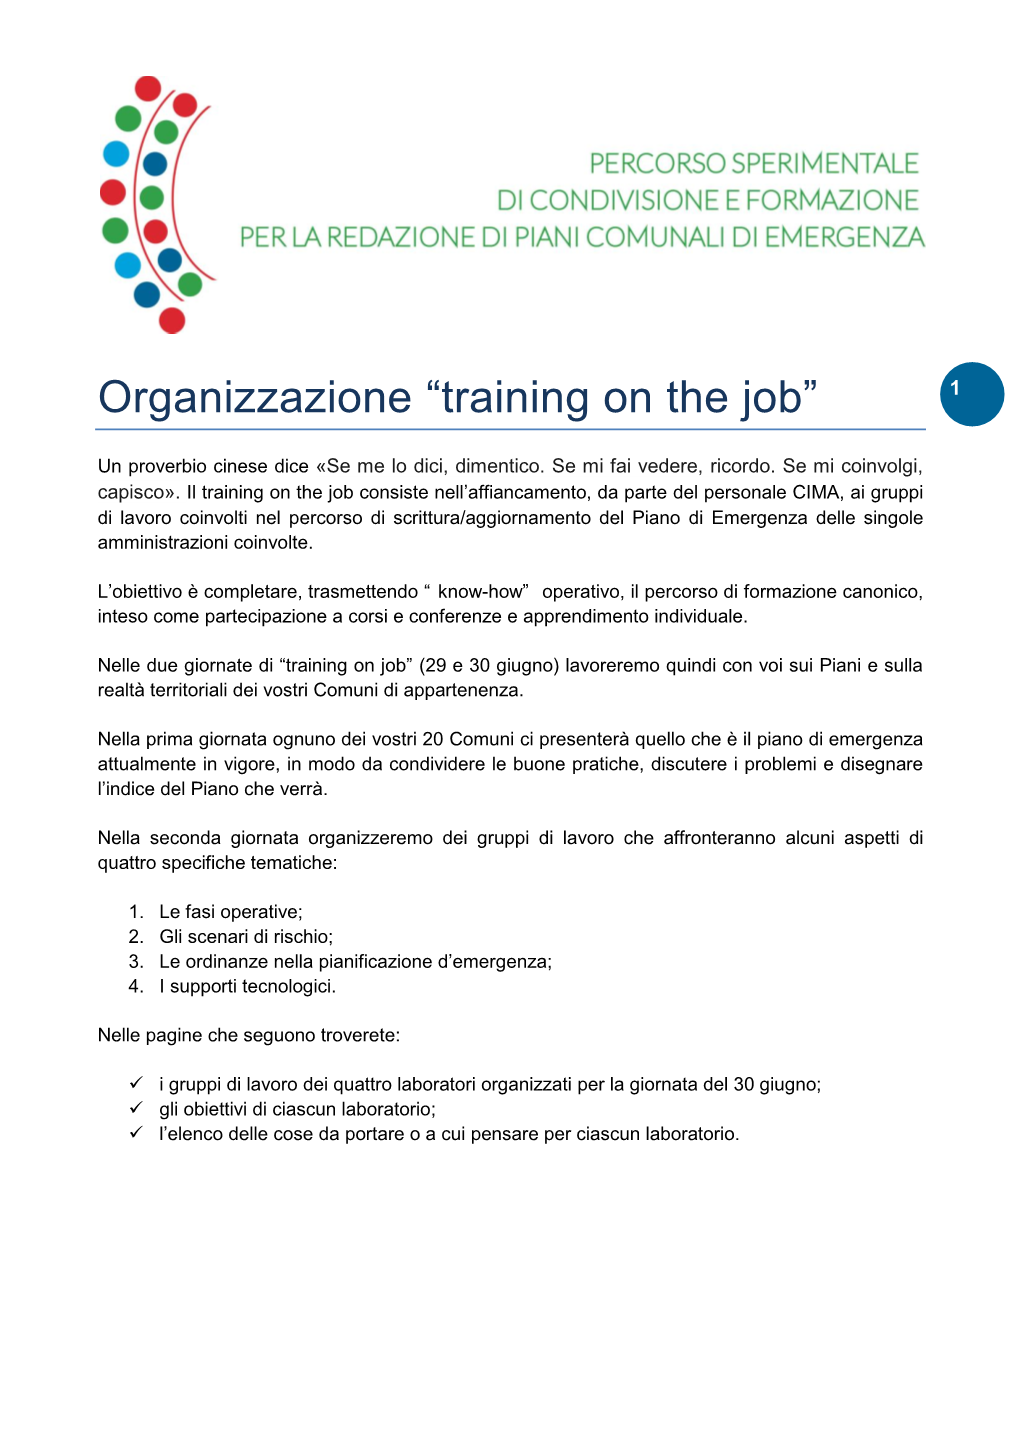 Organizzazione “Training on the Job” 1